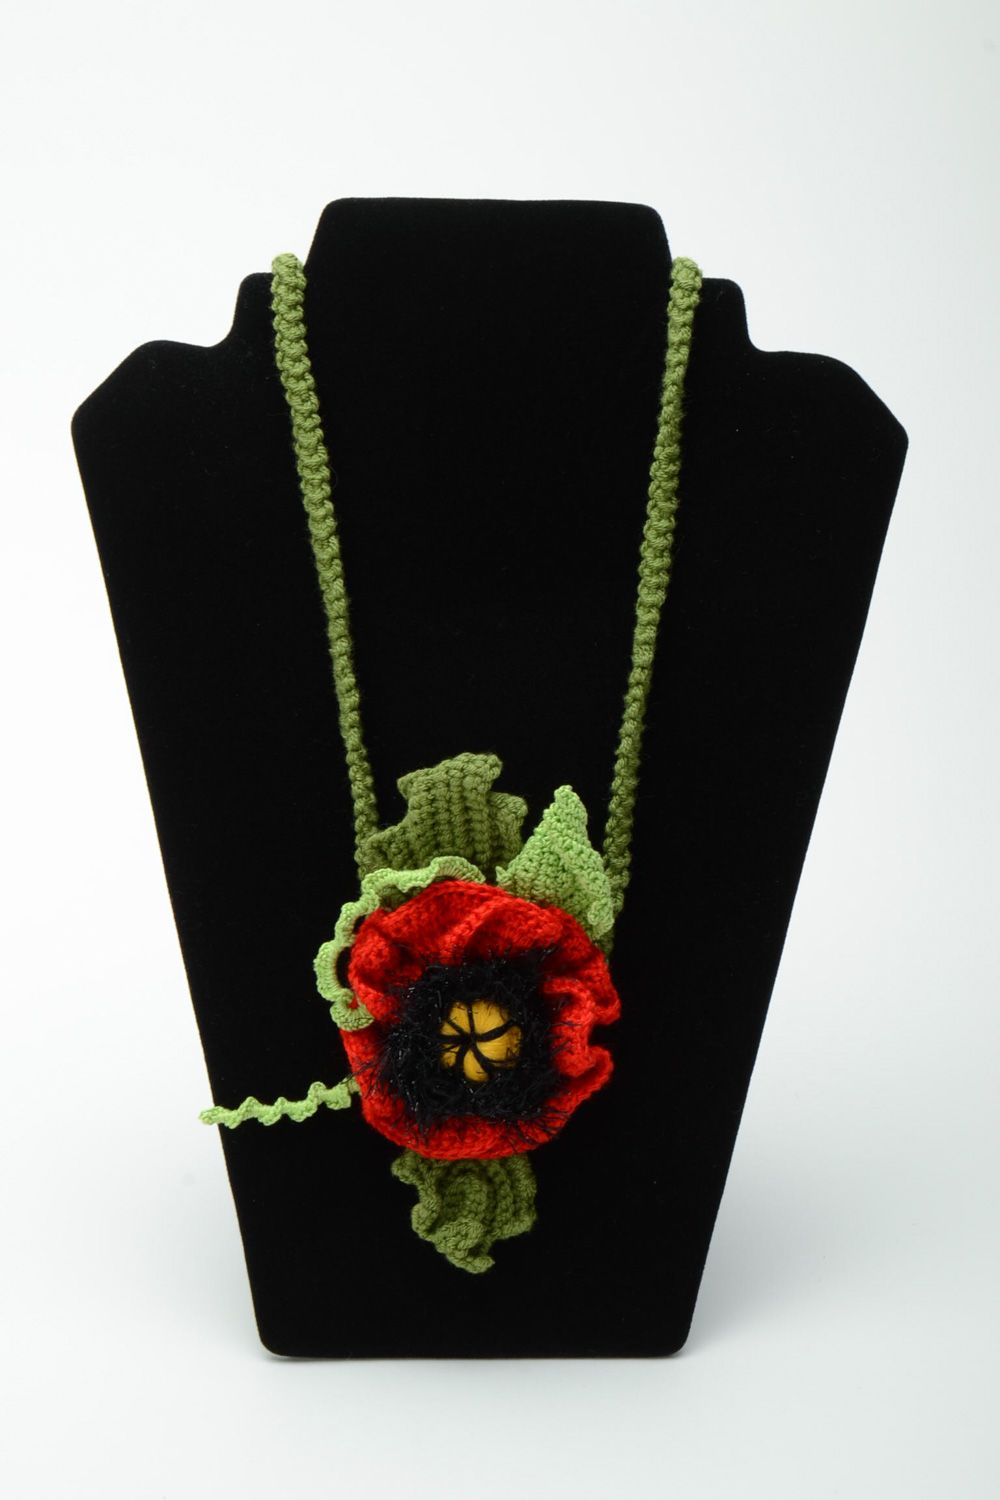 Collier tricoté en acrylique et coton au crochet fait main pratique pavot photo 1